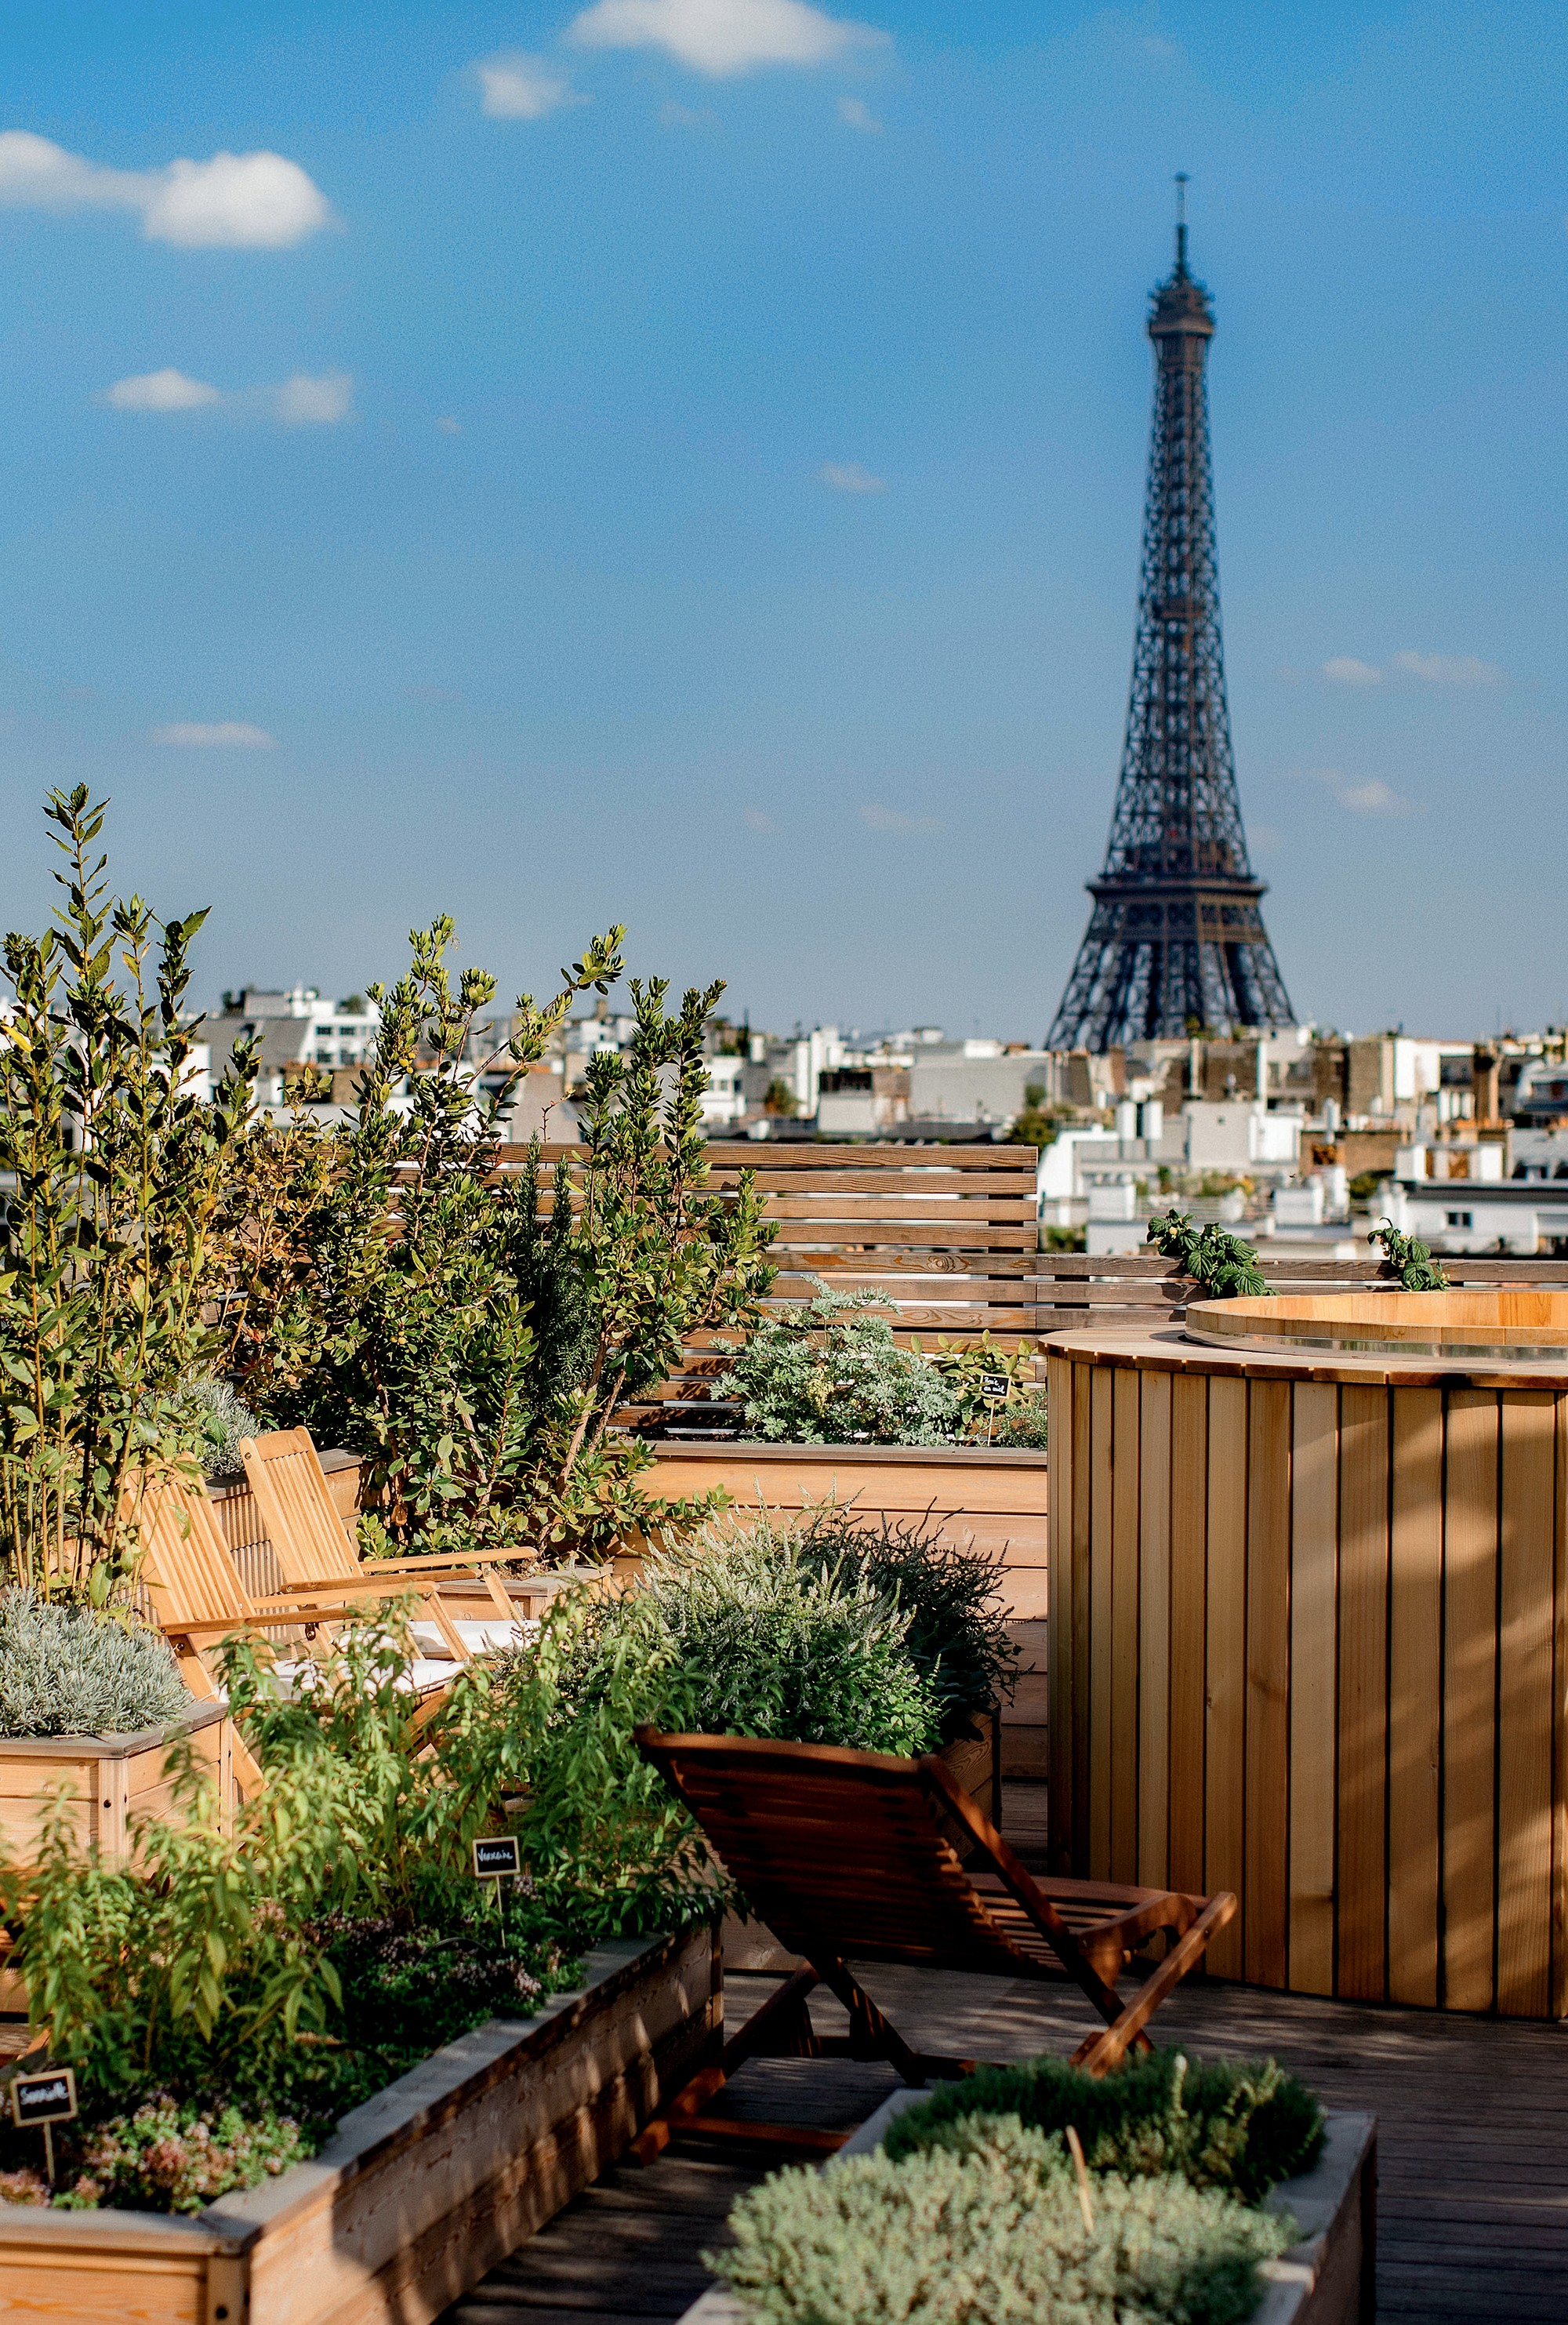 Paris 360°: Horta com vista para a Torre Eiffel. (Foto: divulgação)